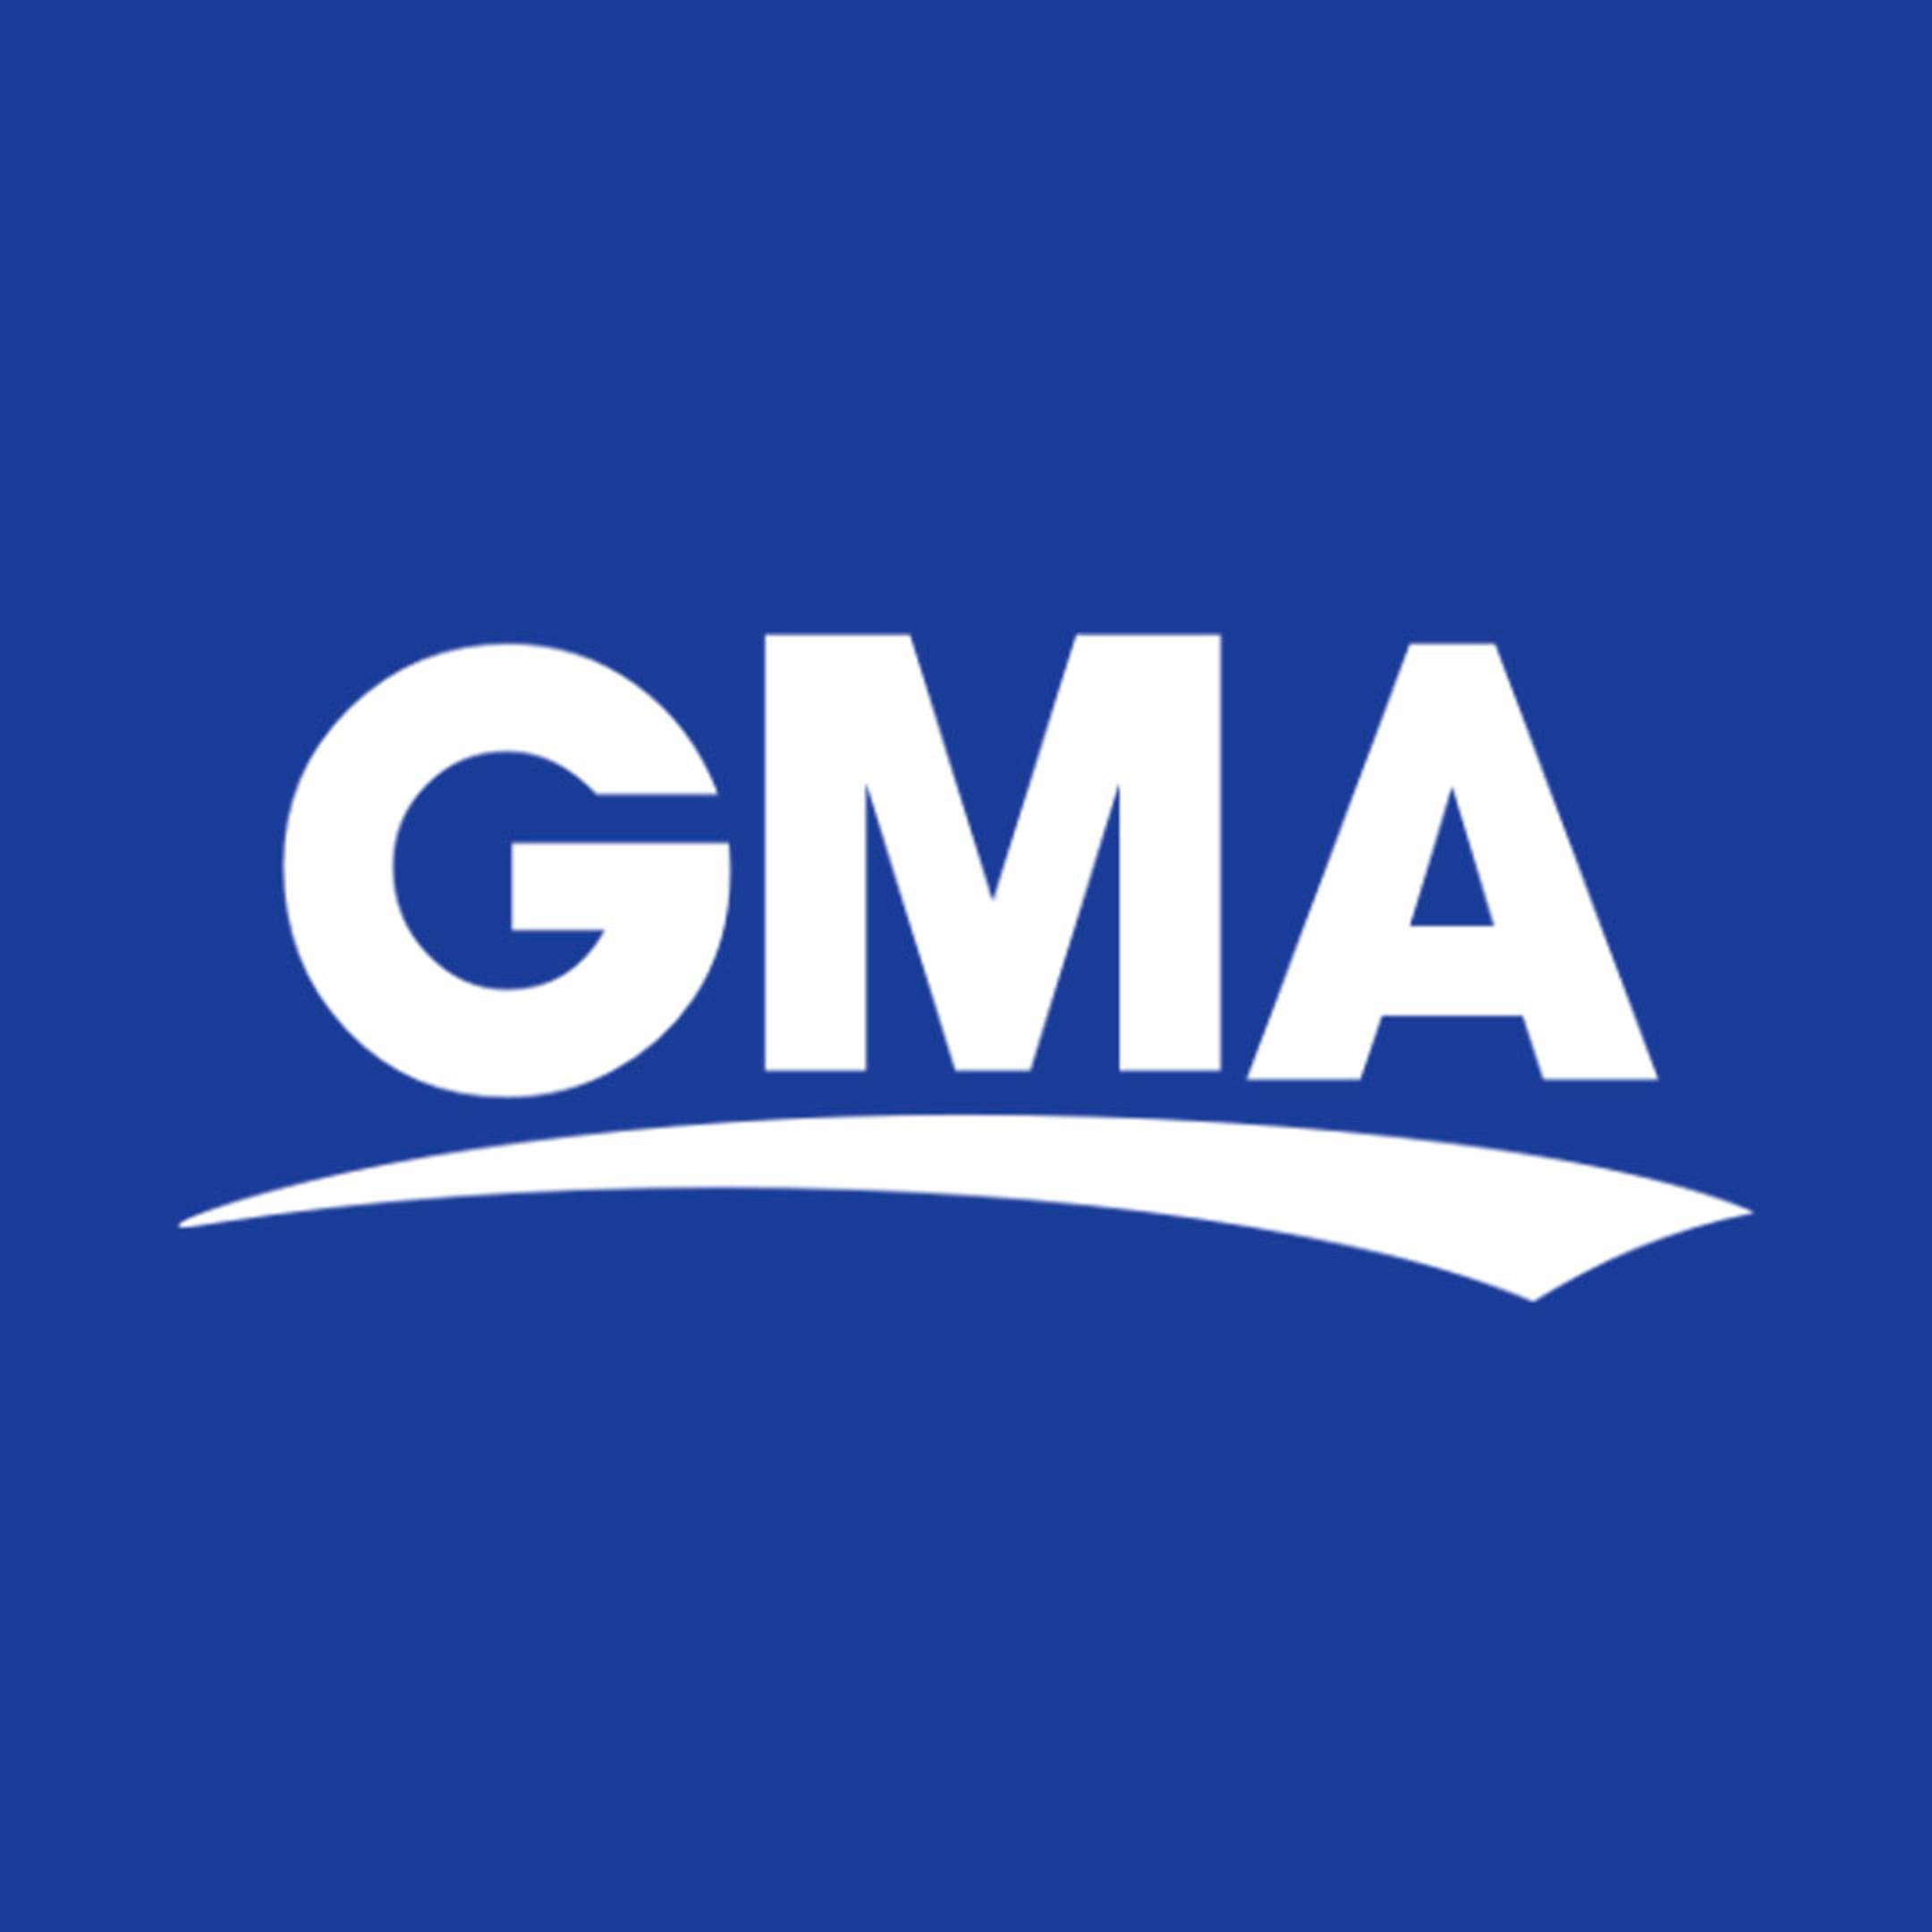 GMA logo on blue background 